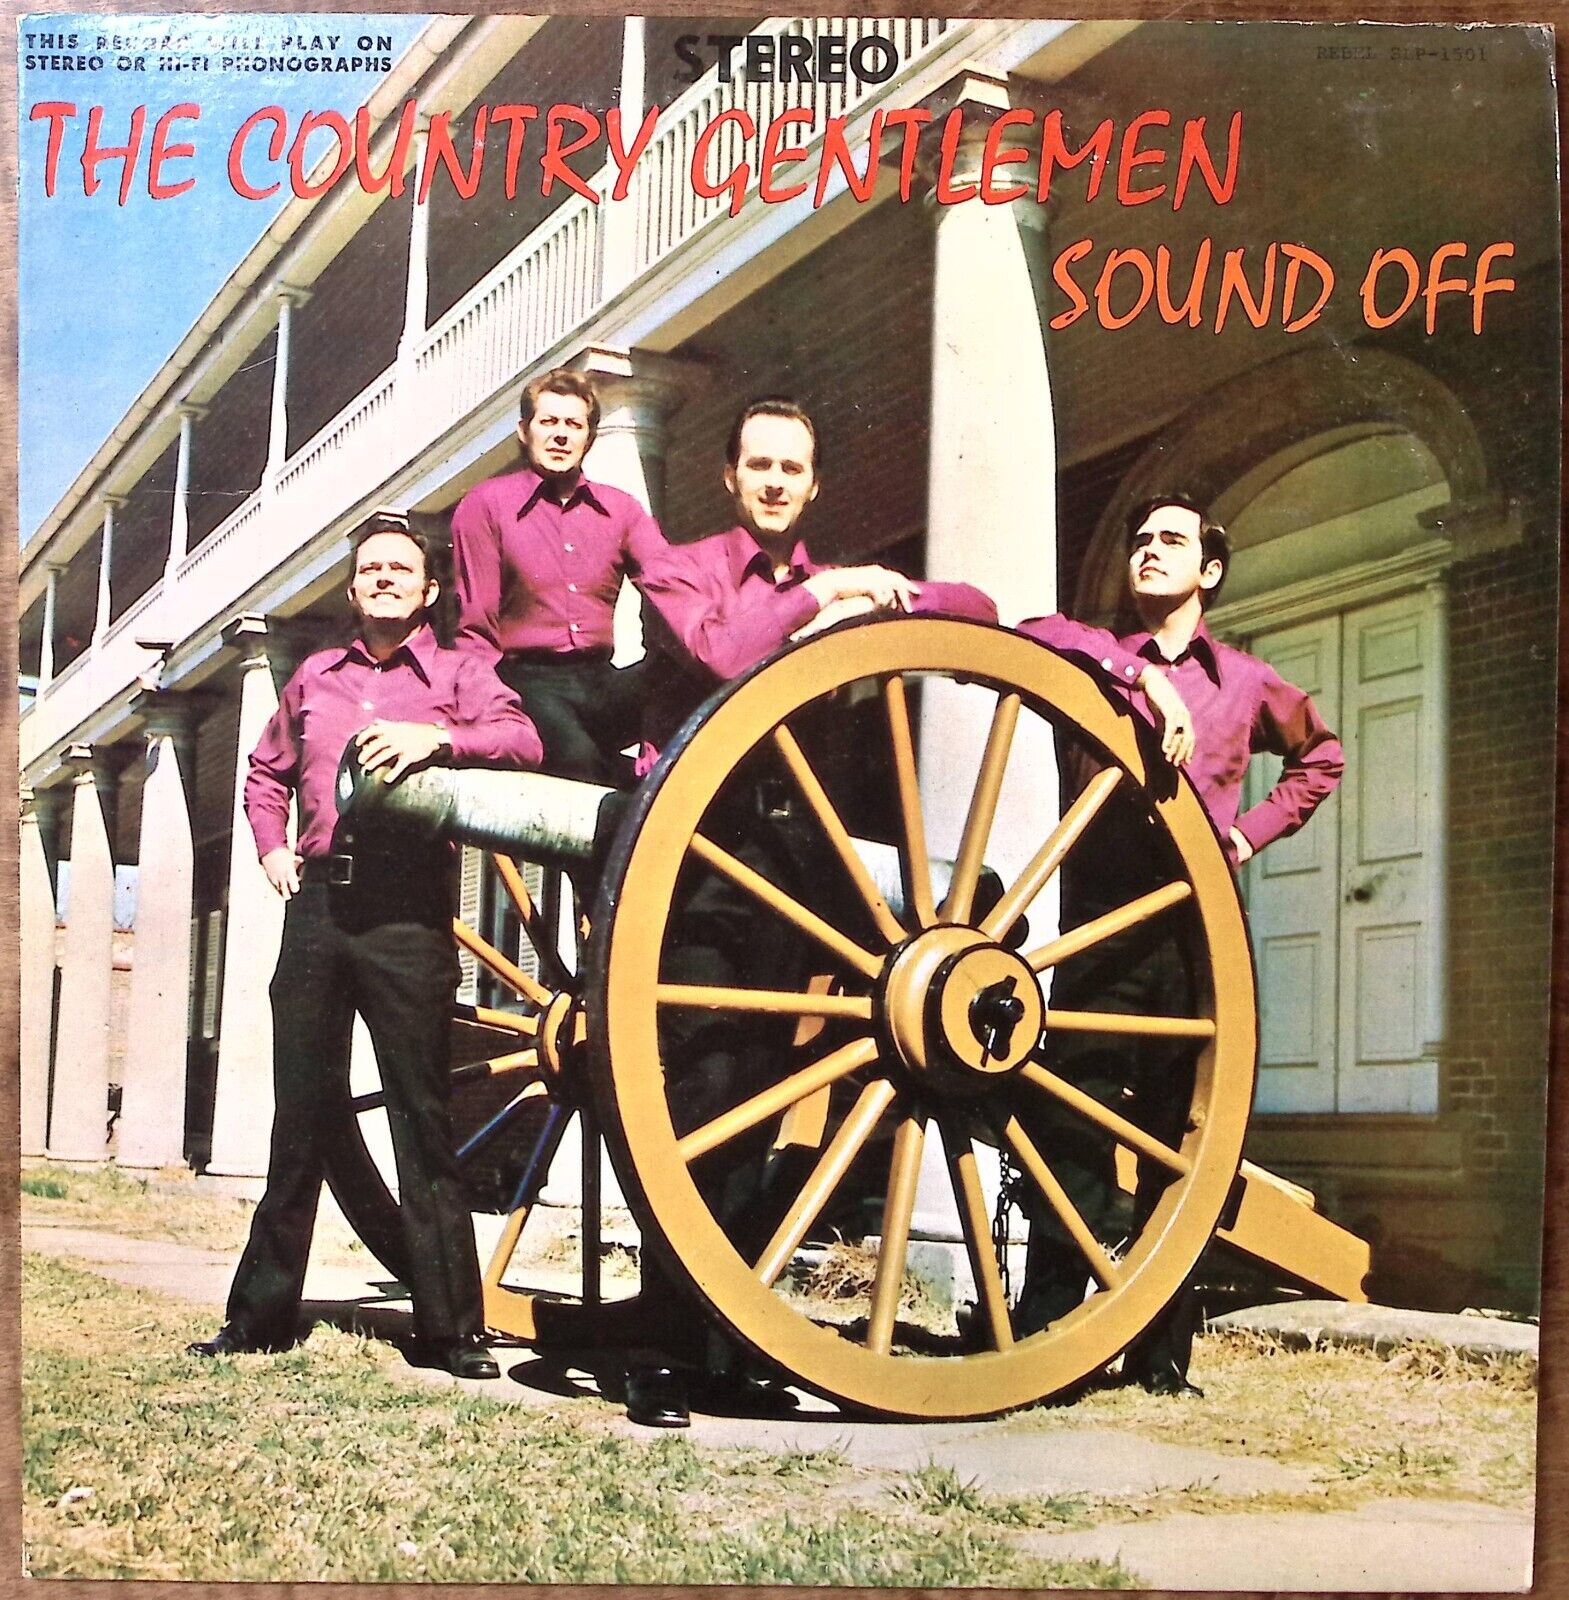 THE COUNTRY GENTLEMEN SOUND OFF REBEL RECORDS EXCELLENT VINYL LP 204-81